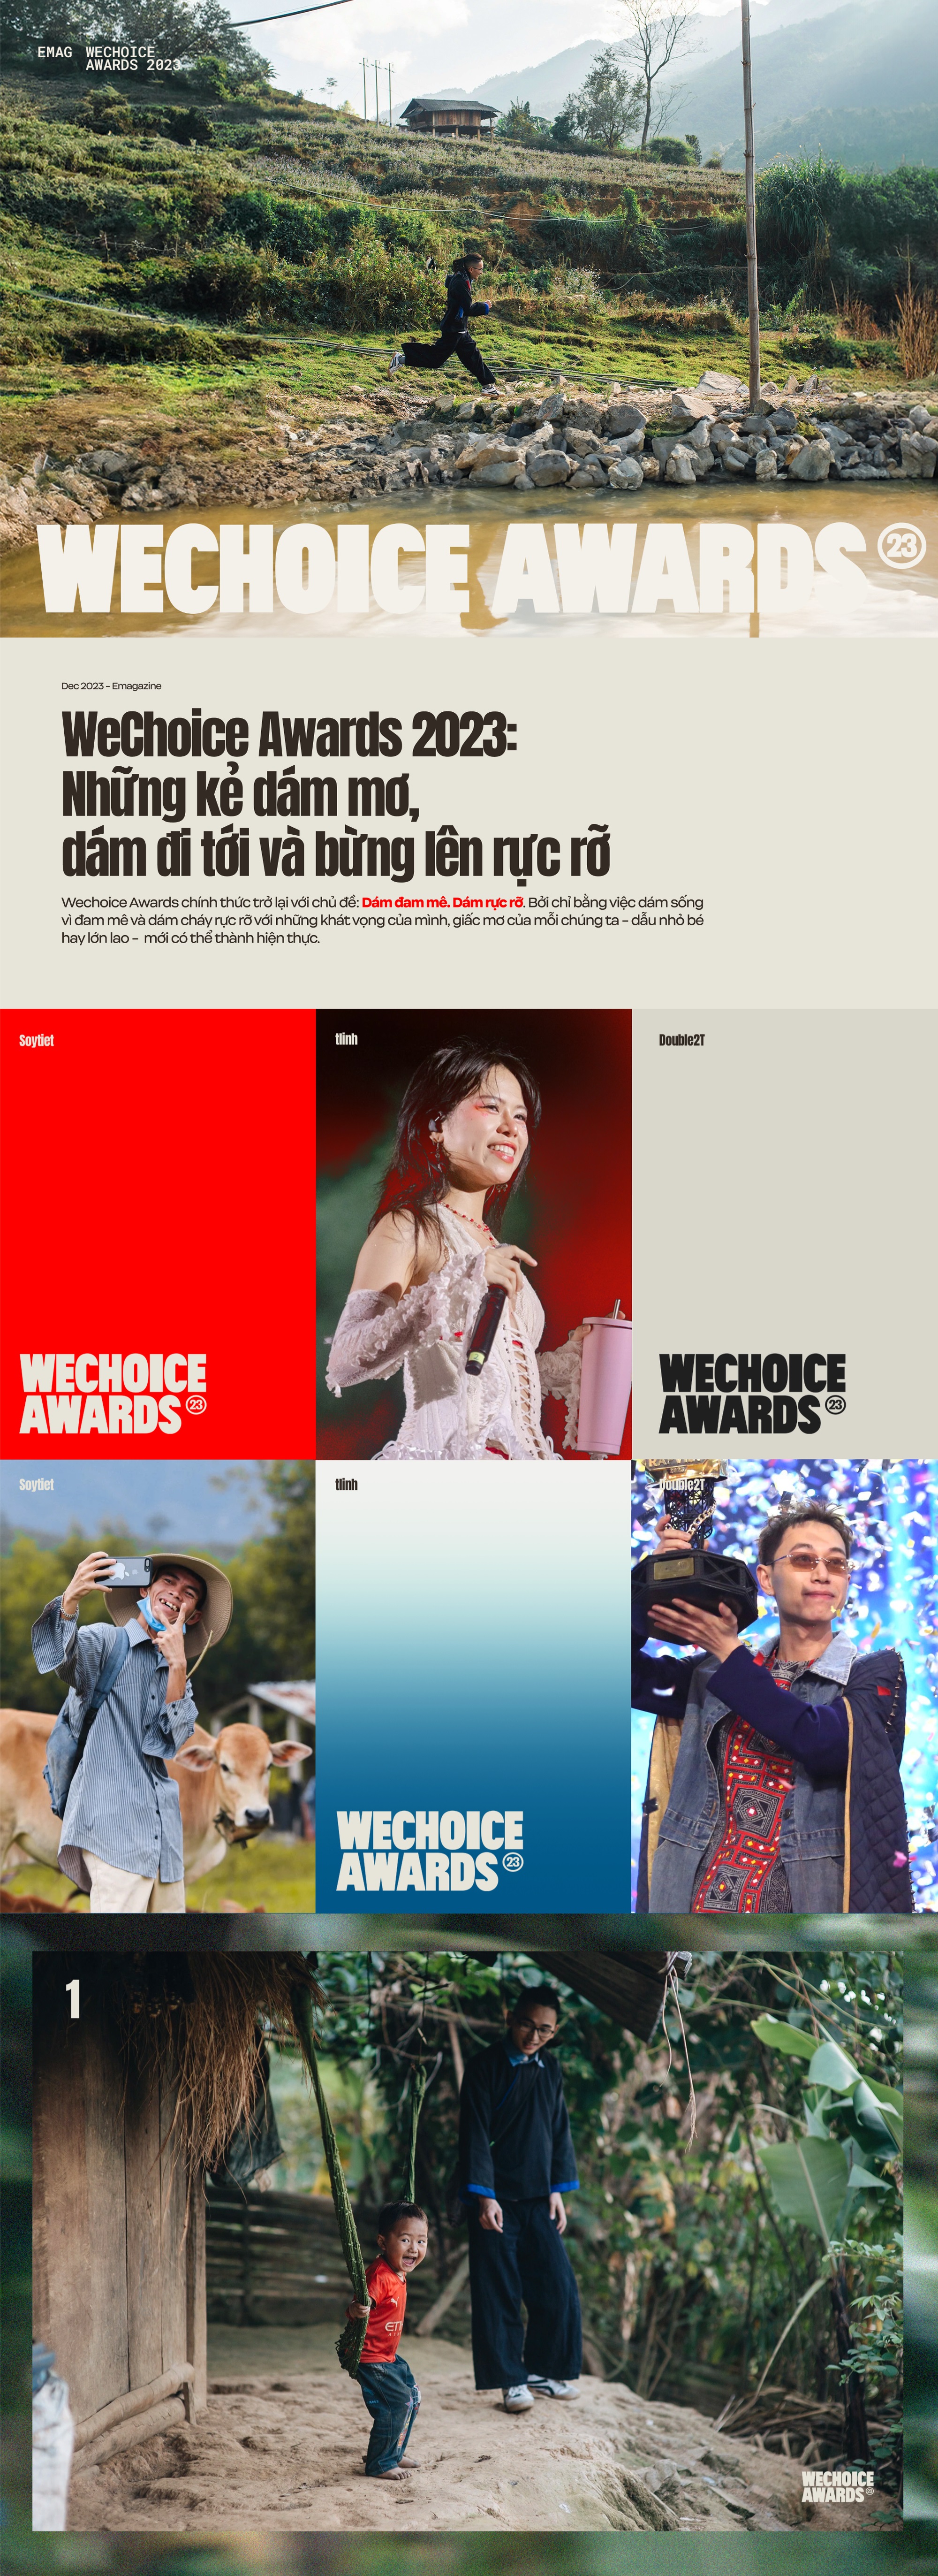 Wechoice Awards 2023: NhữNg Kẻ DáM Mơ, DáM đI TớI Và BừNg LêN RựC Rỡ - ẢNh 1.